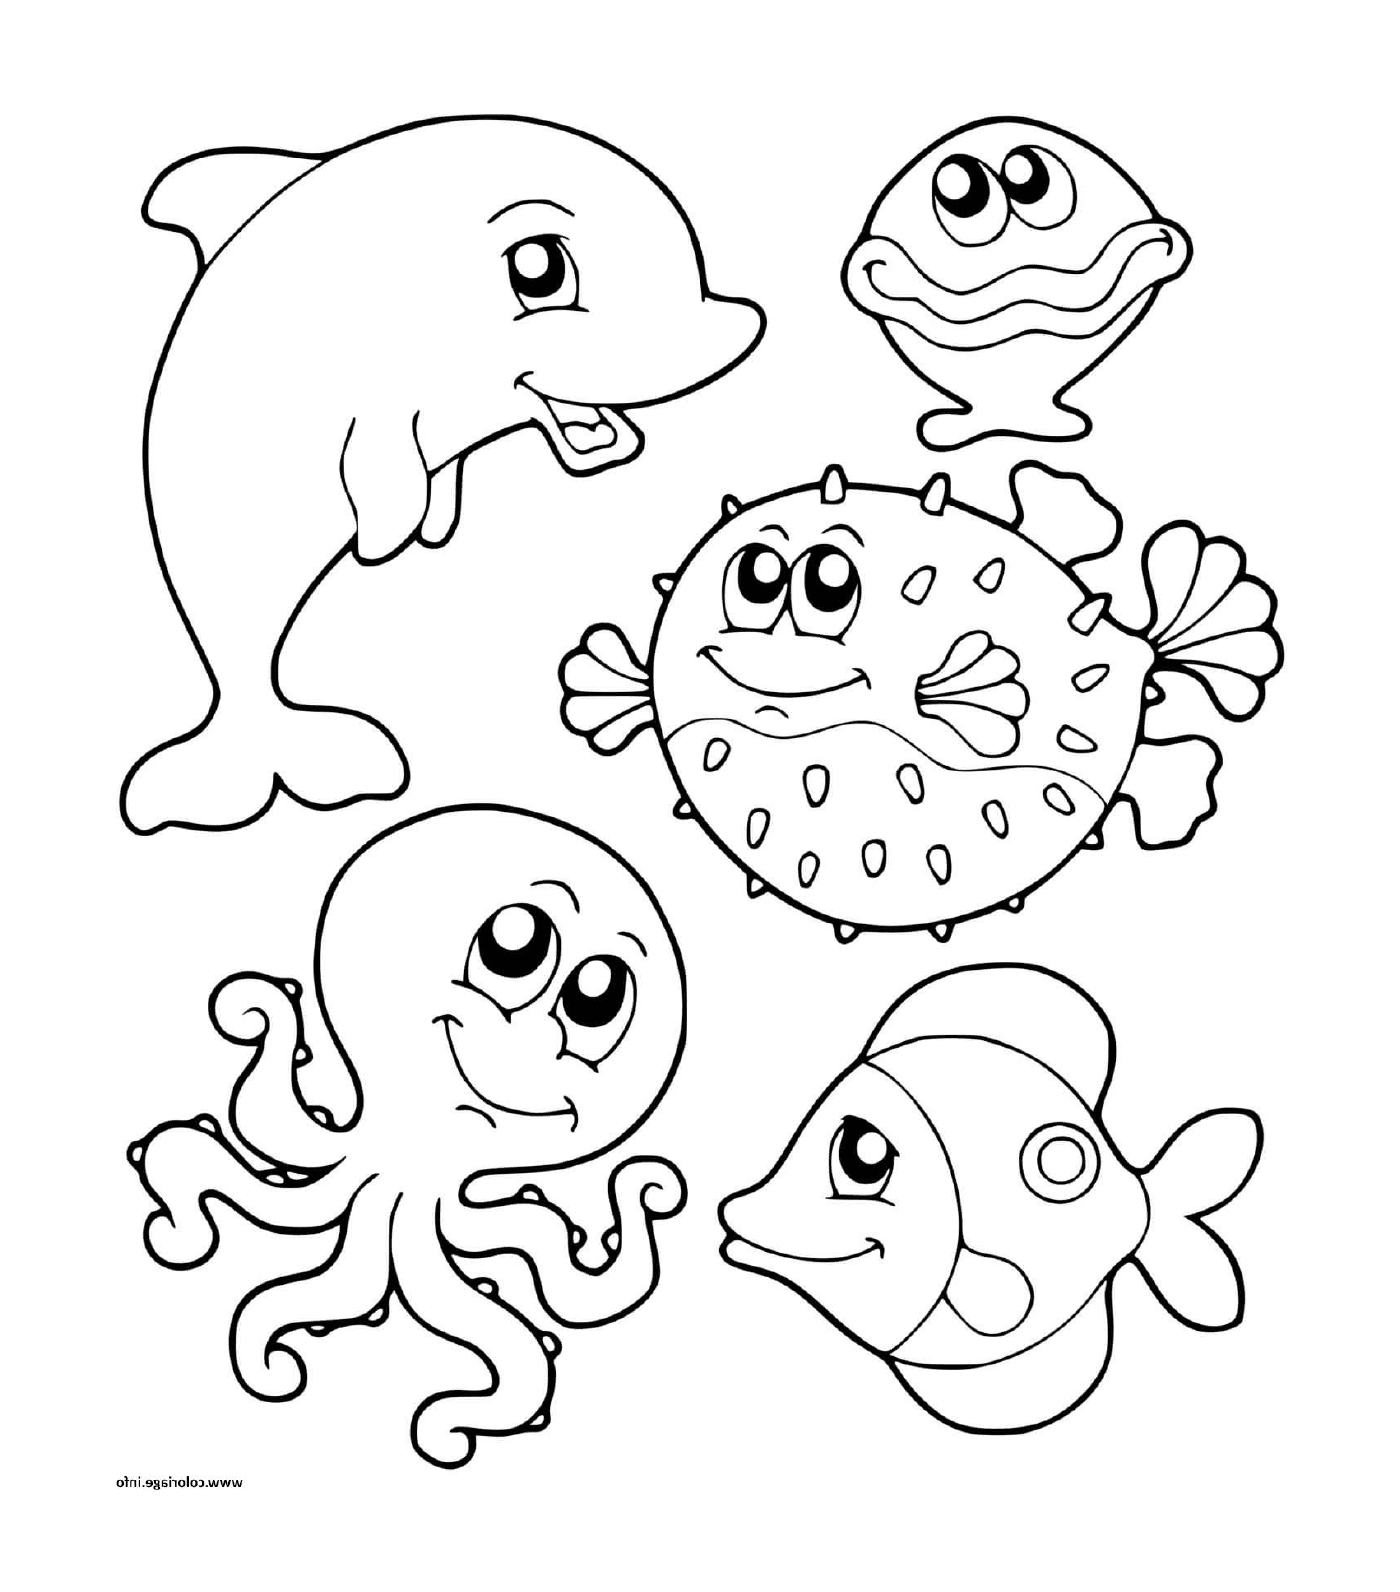  un grupo de animales marinos en el agua 